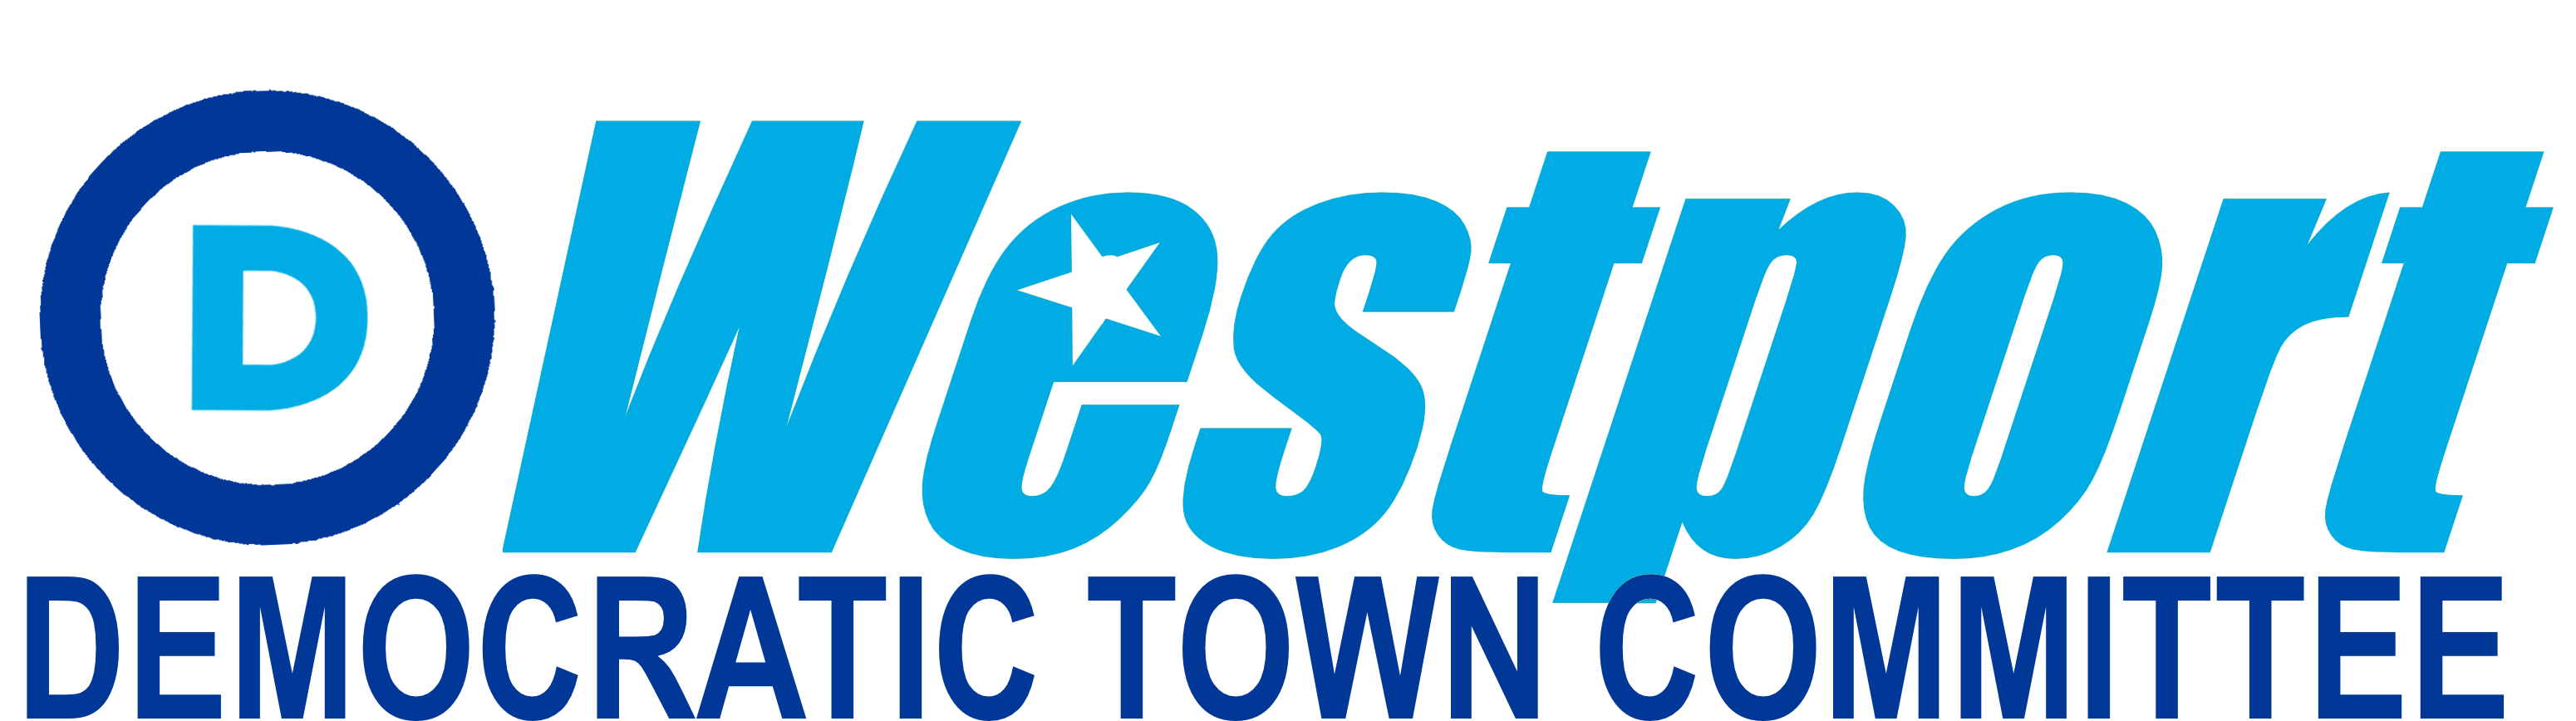 Westport Democratic Town Committee